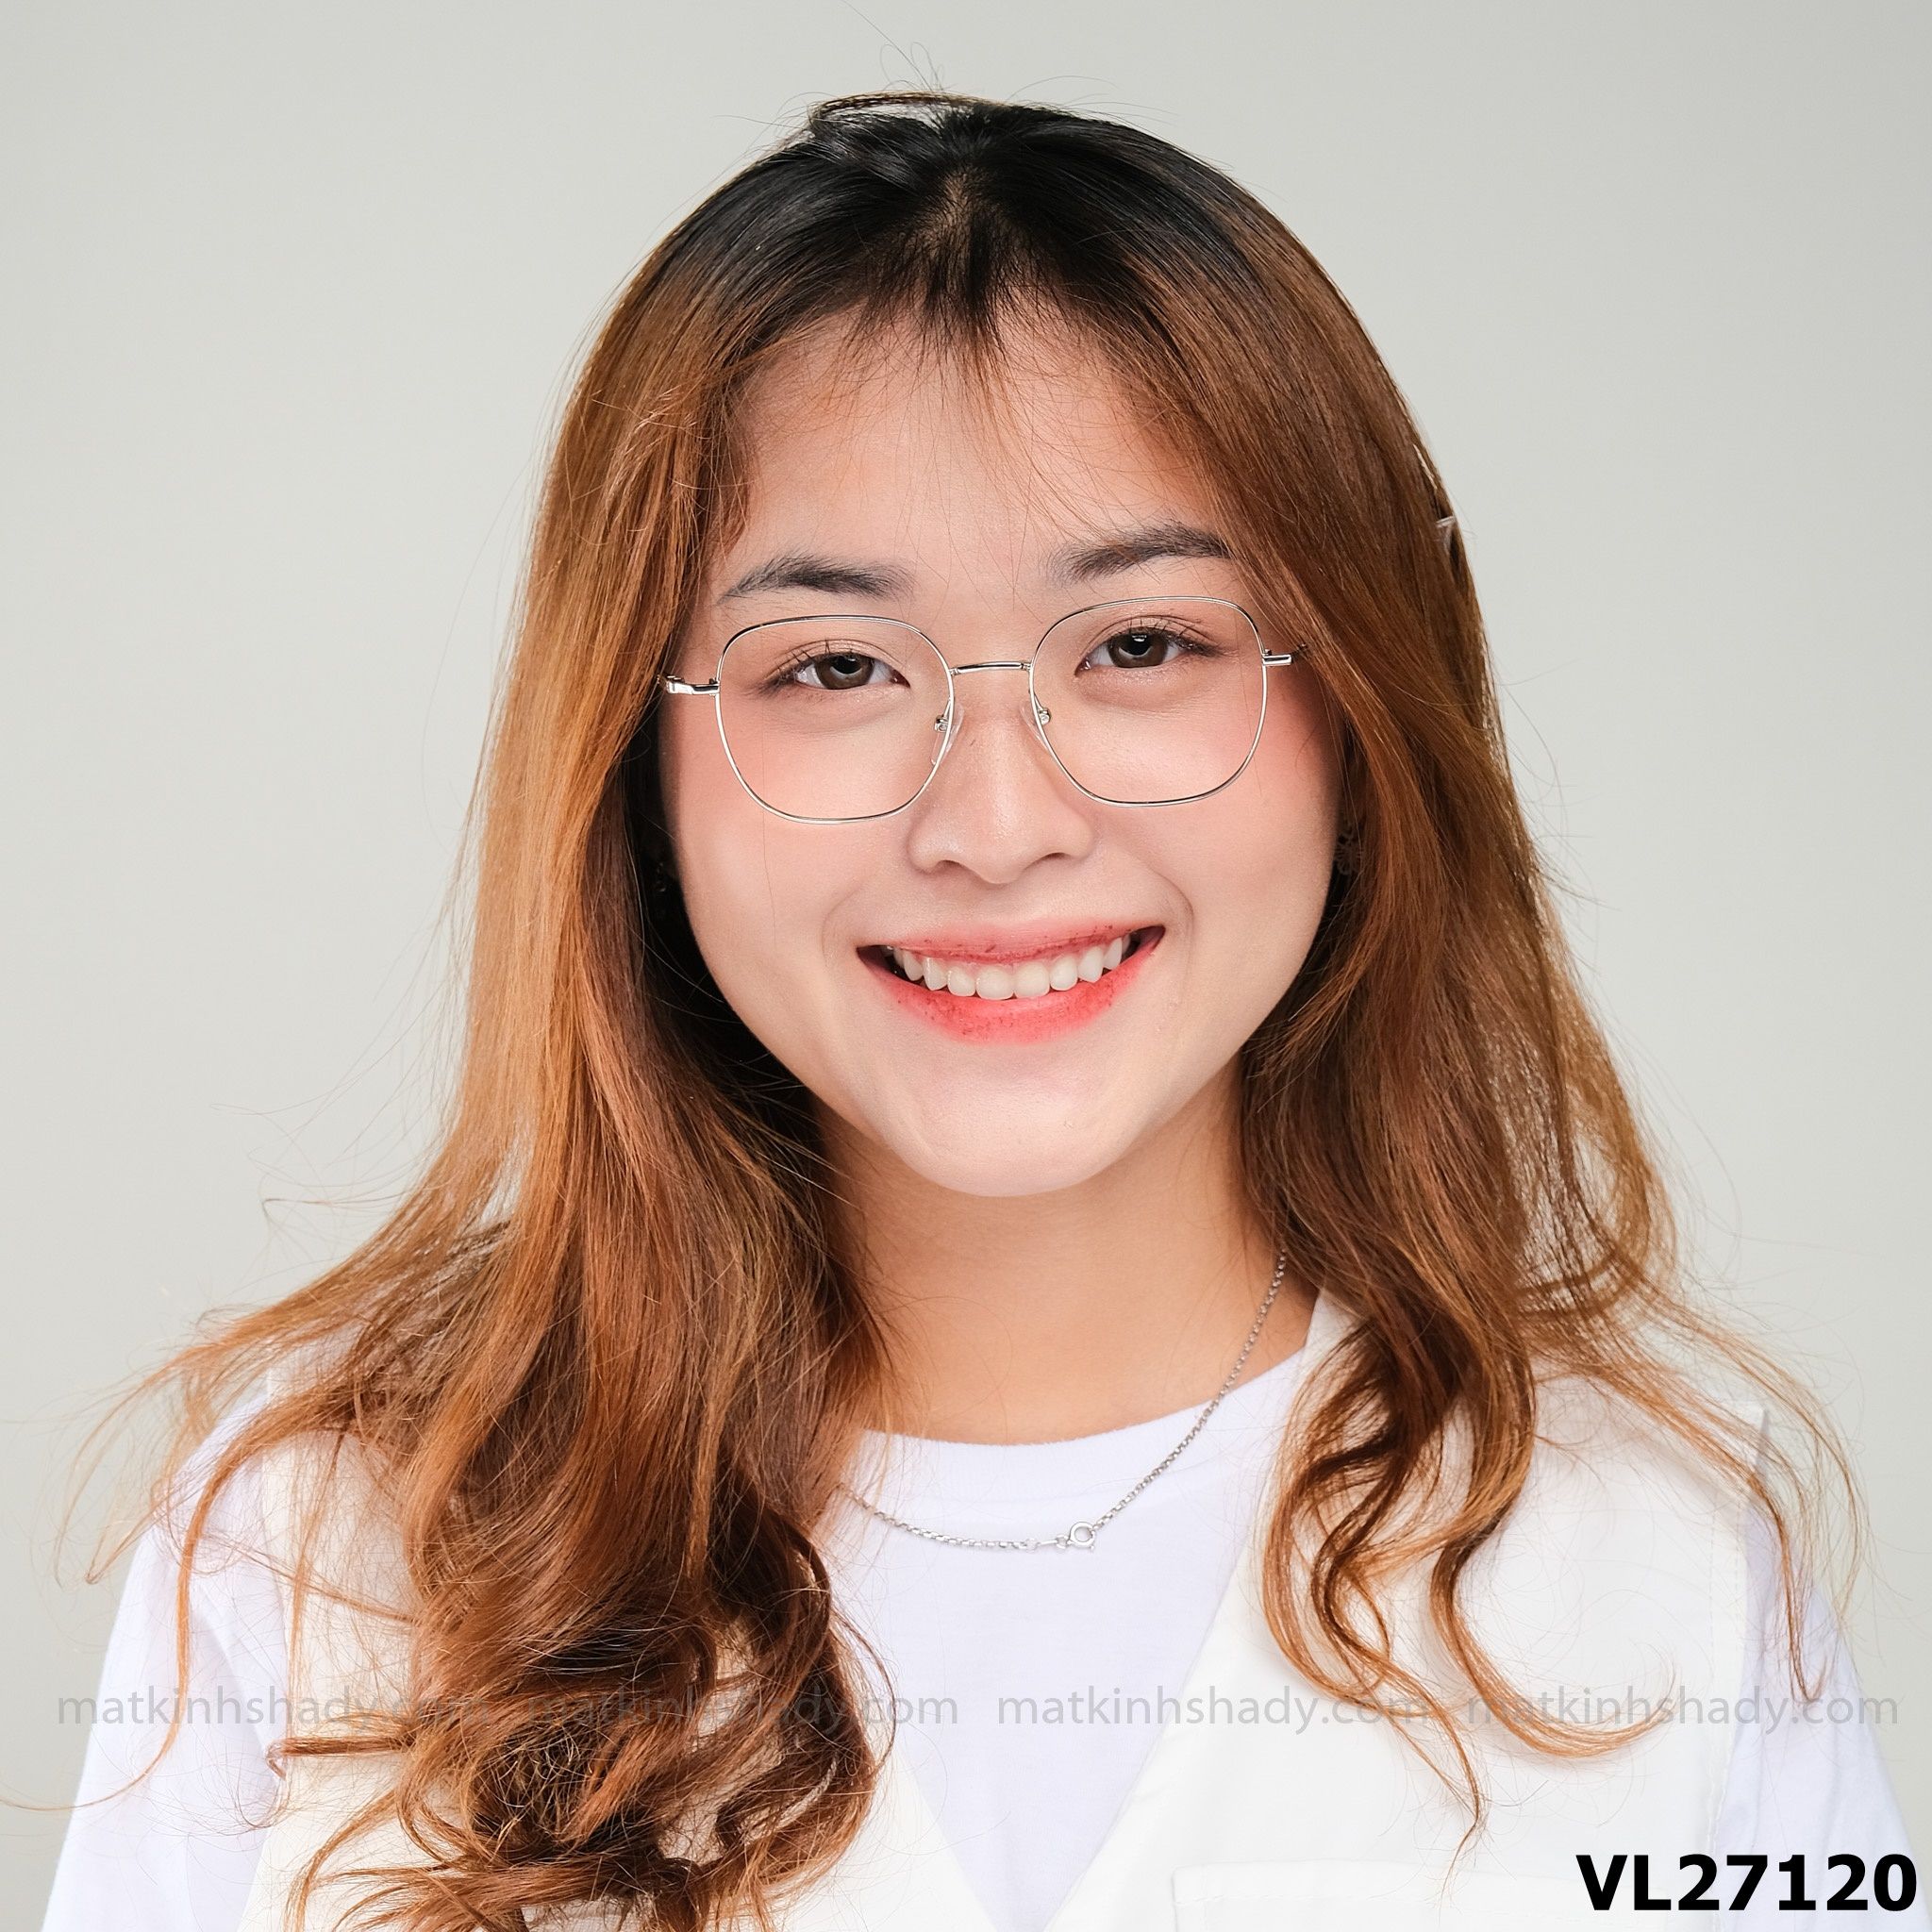  Velocity Eyewear - Glasses - VL27120 